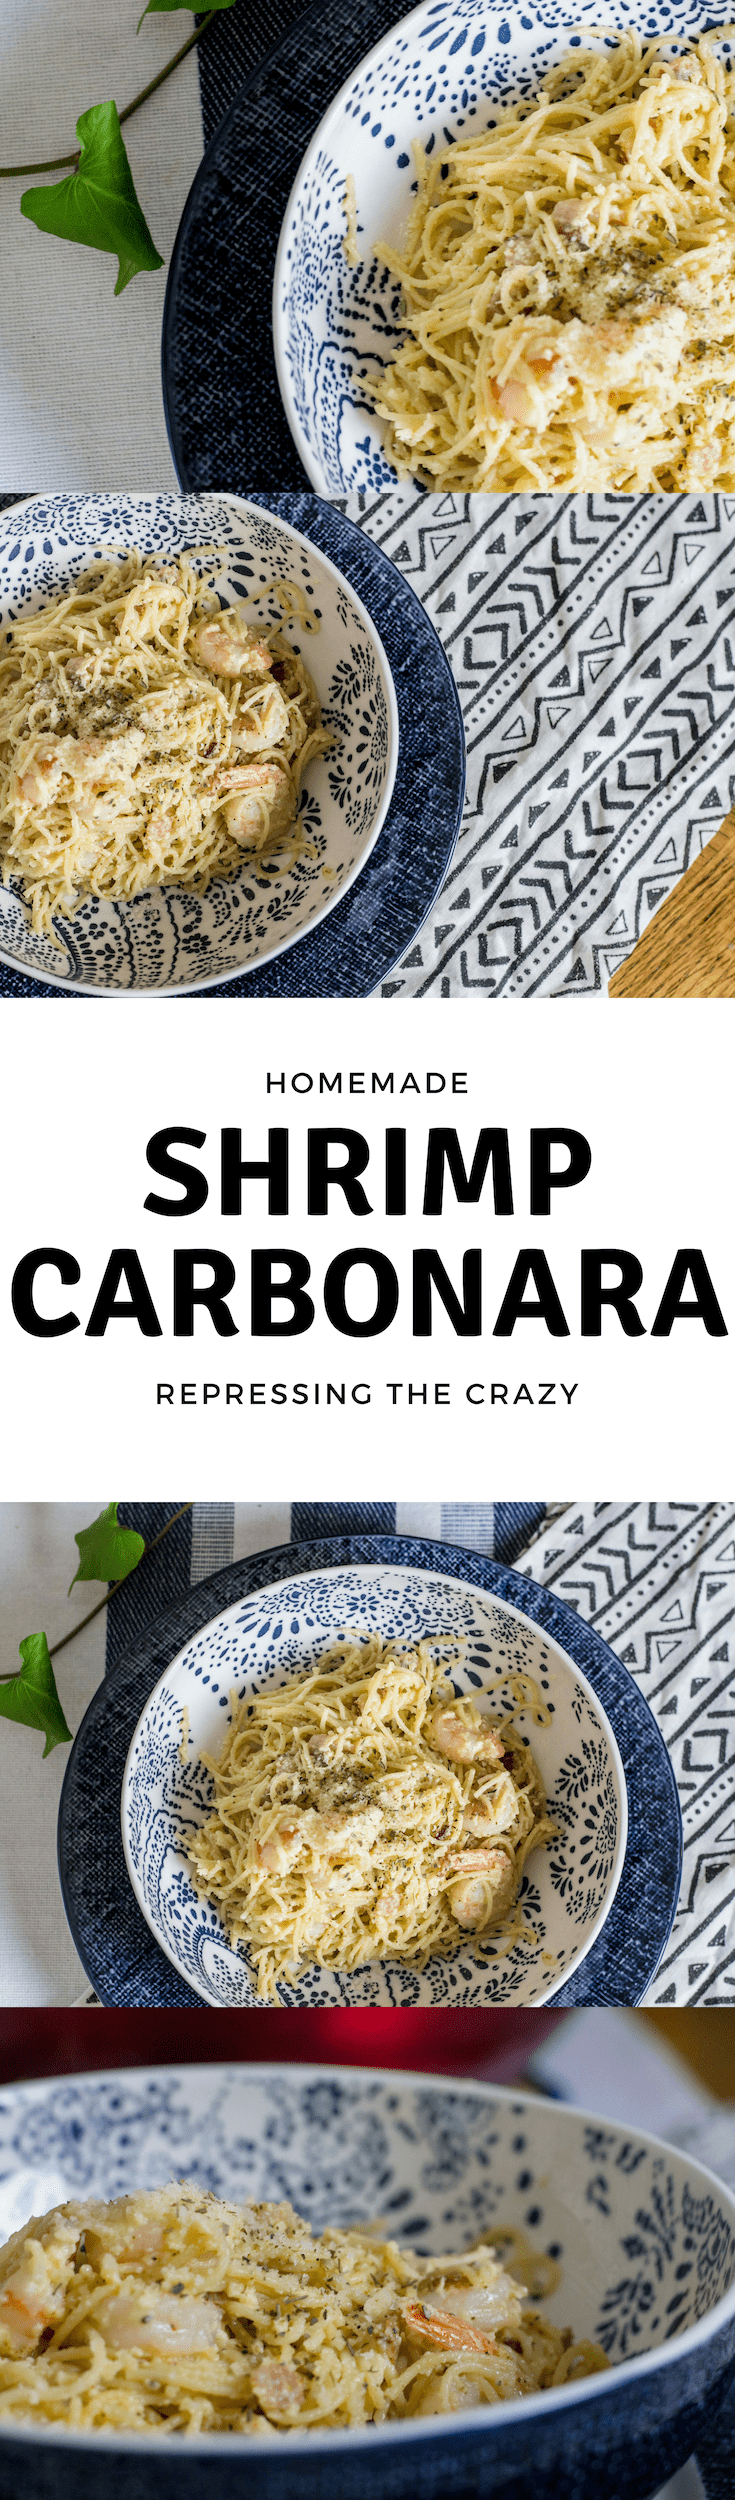 How to make shrimp carbonara at home